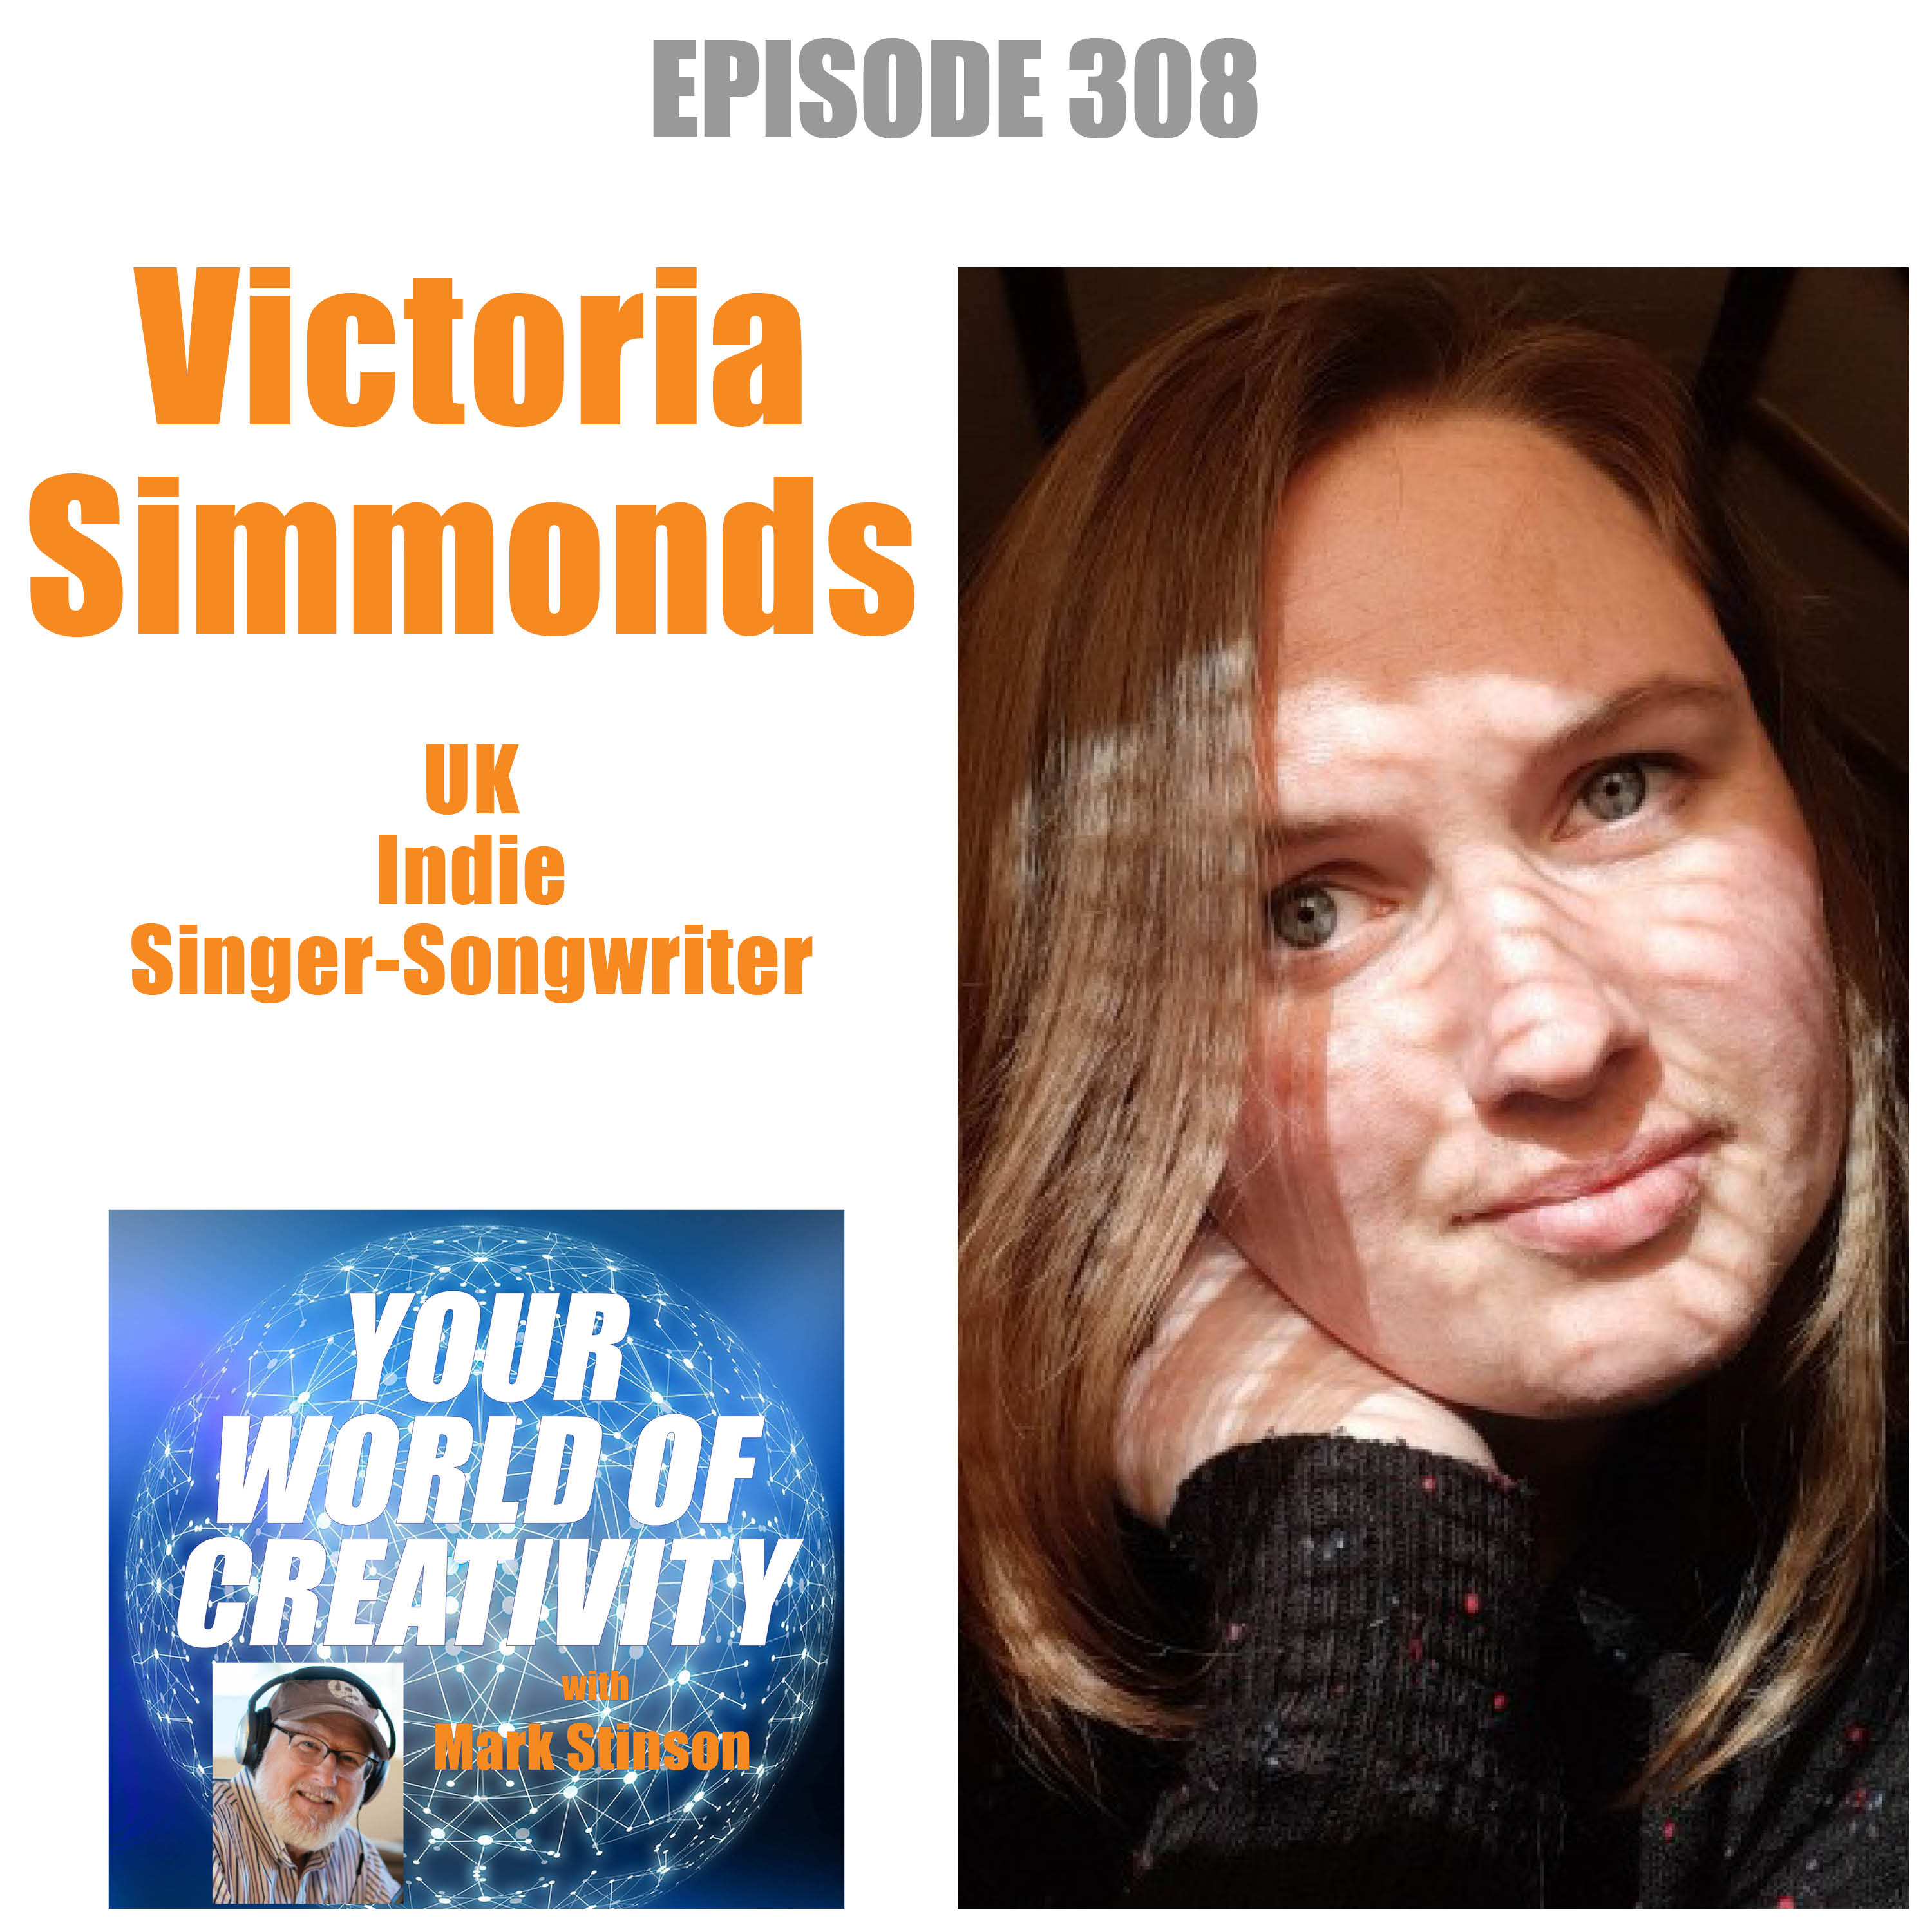 Victoria Simmonds, UK Indie Singer-Songwriter